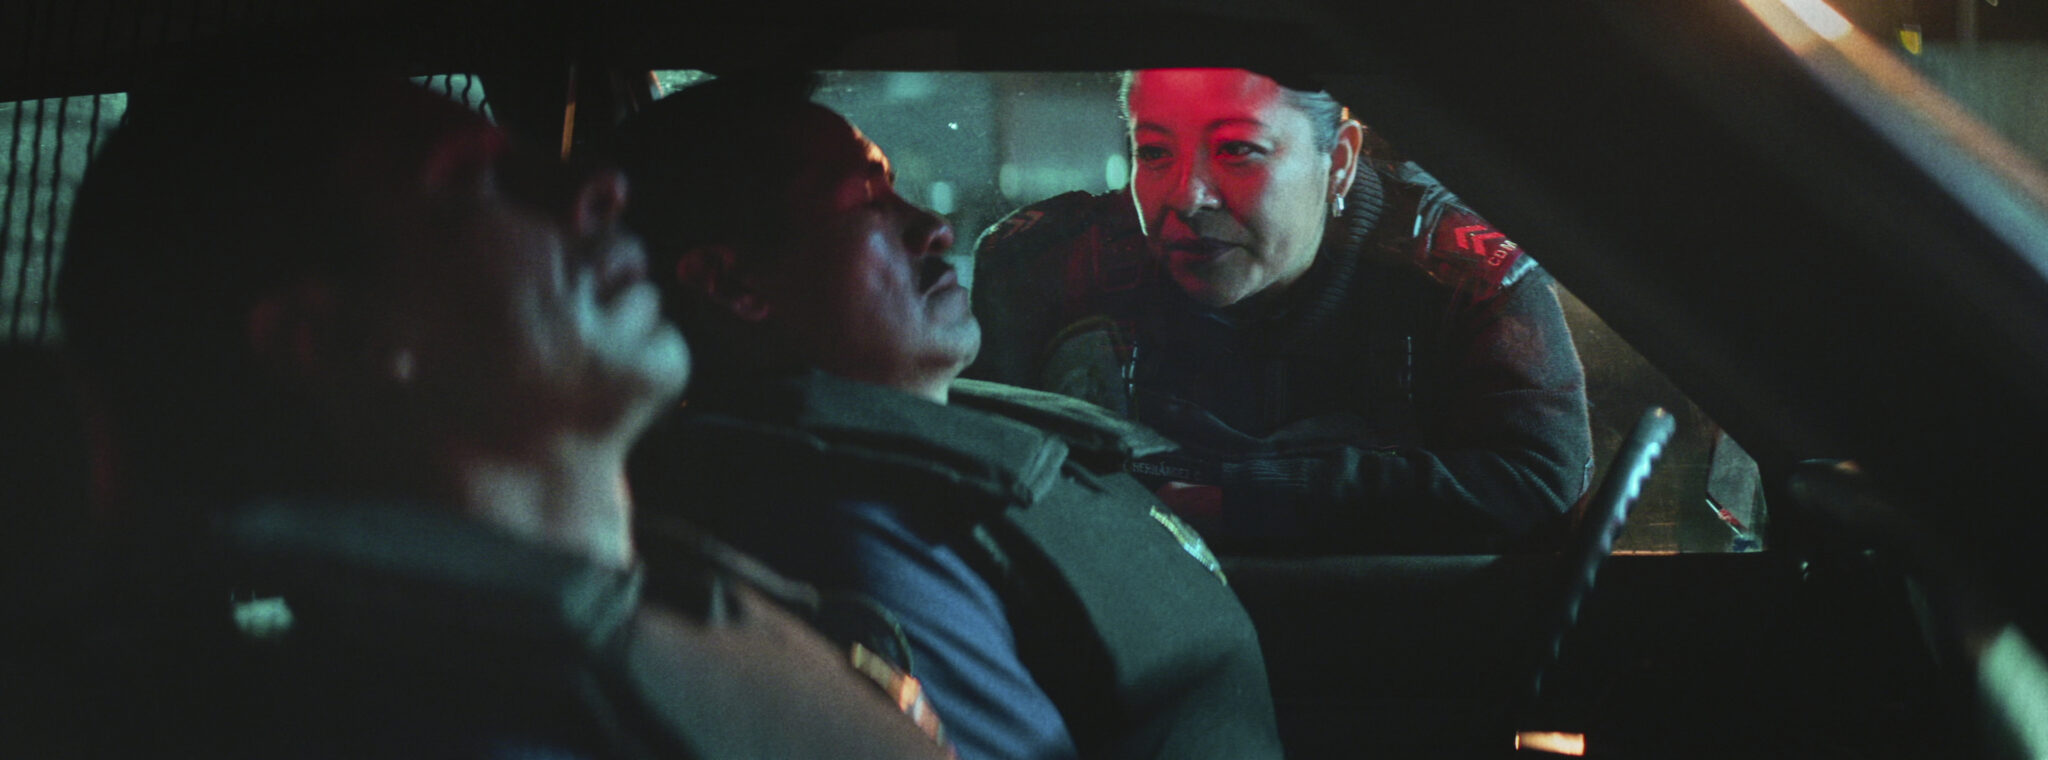 Eine Polizistin schaut durch ein Autofenster in ein Auto, in dem zwei Männer mit Schutzweste sitzen.